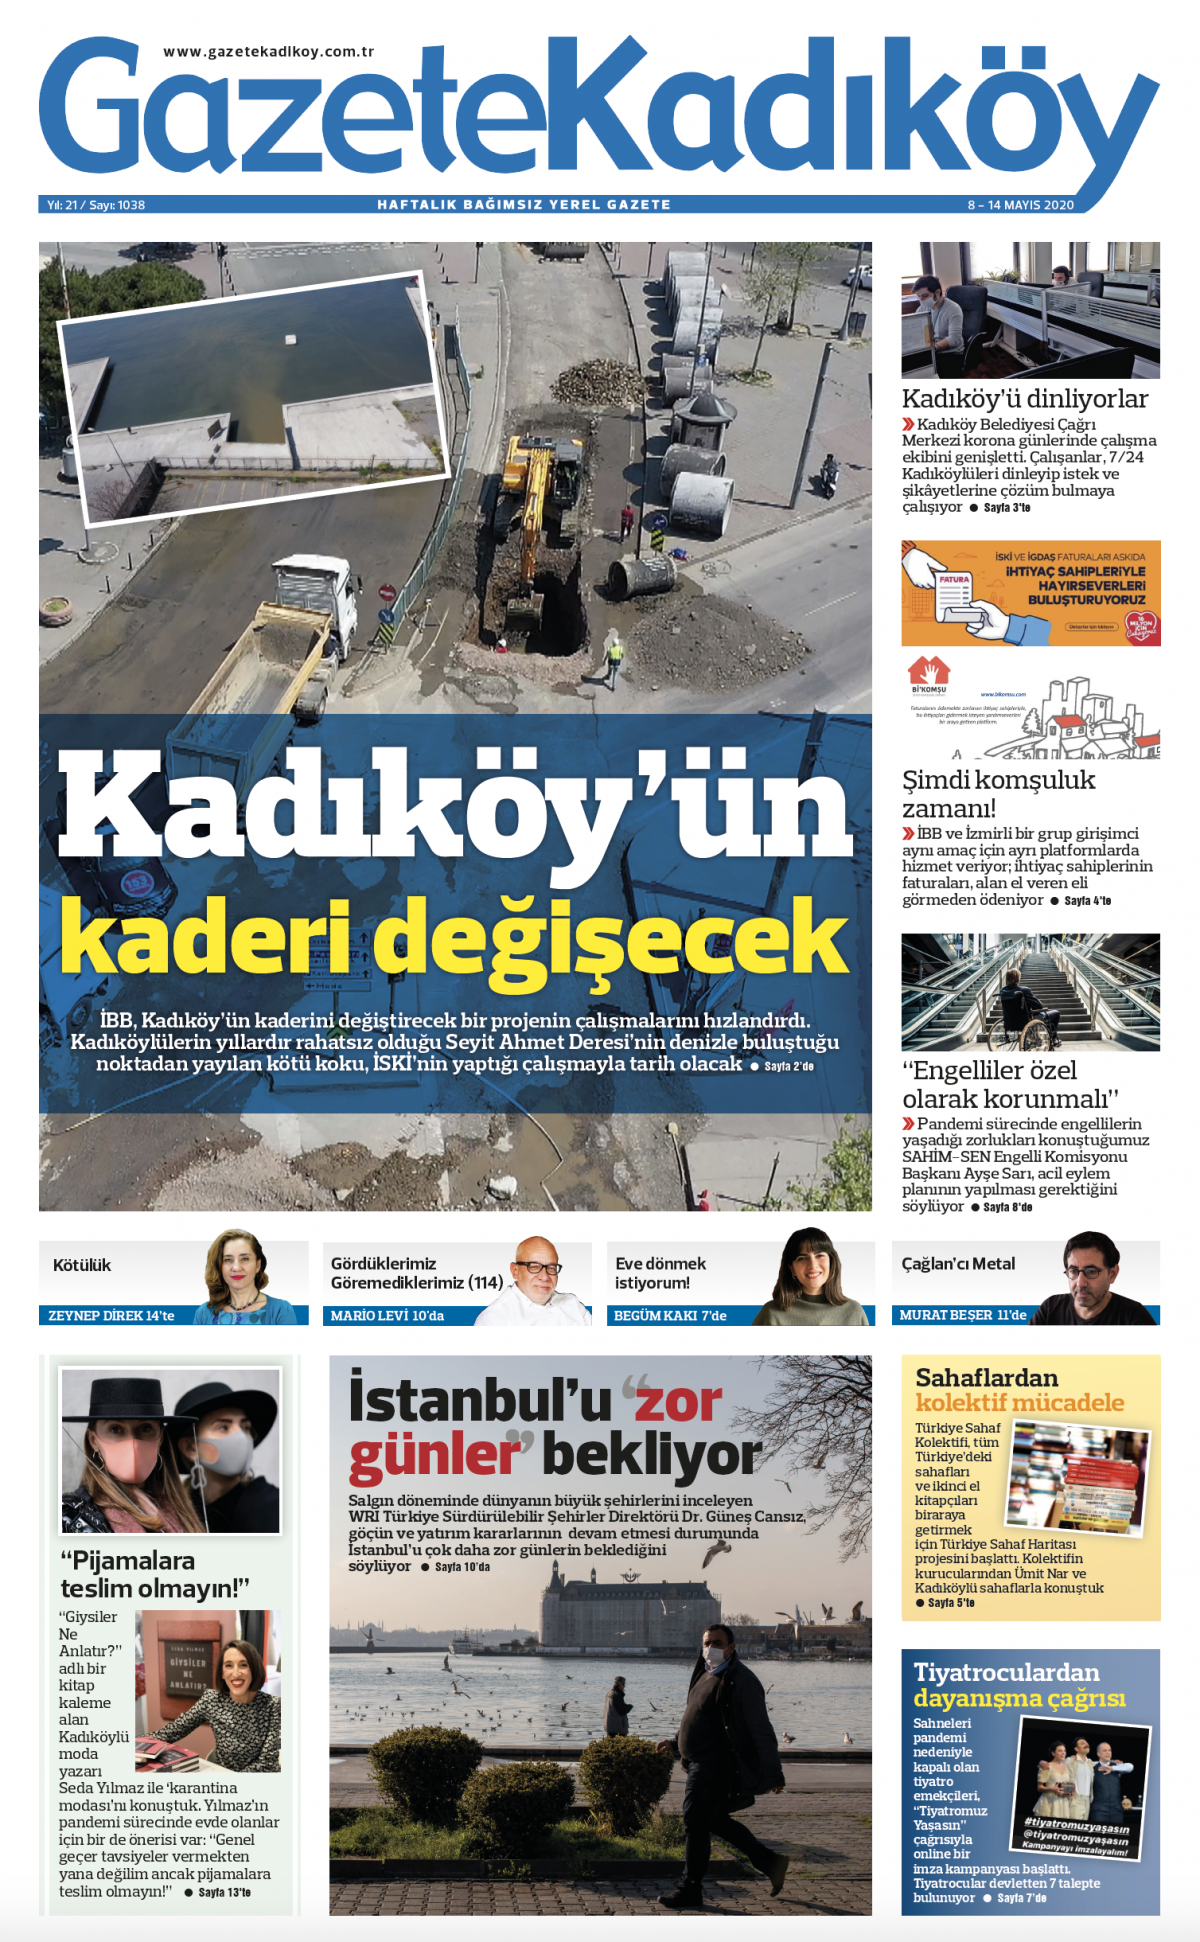 Gazete Kadıköy - 1038. Sayı